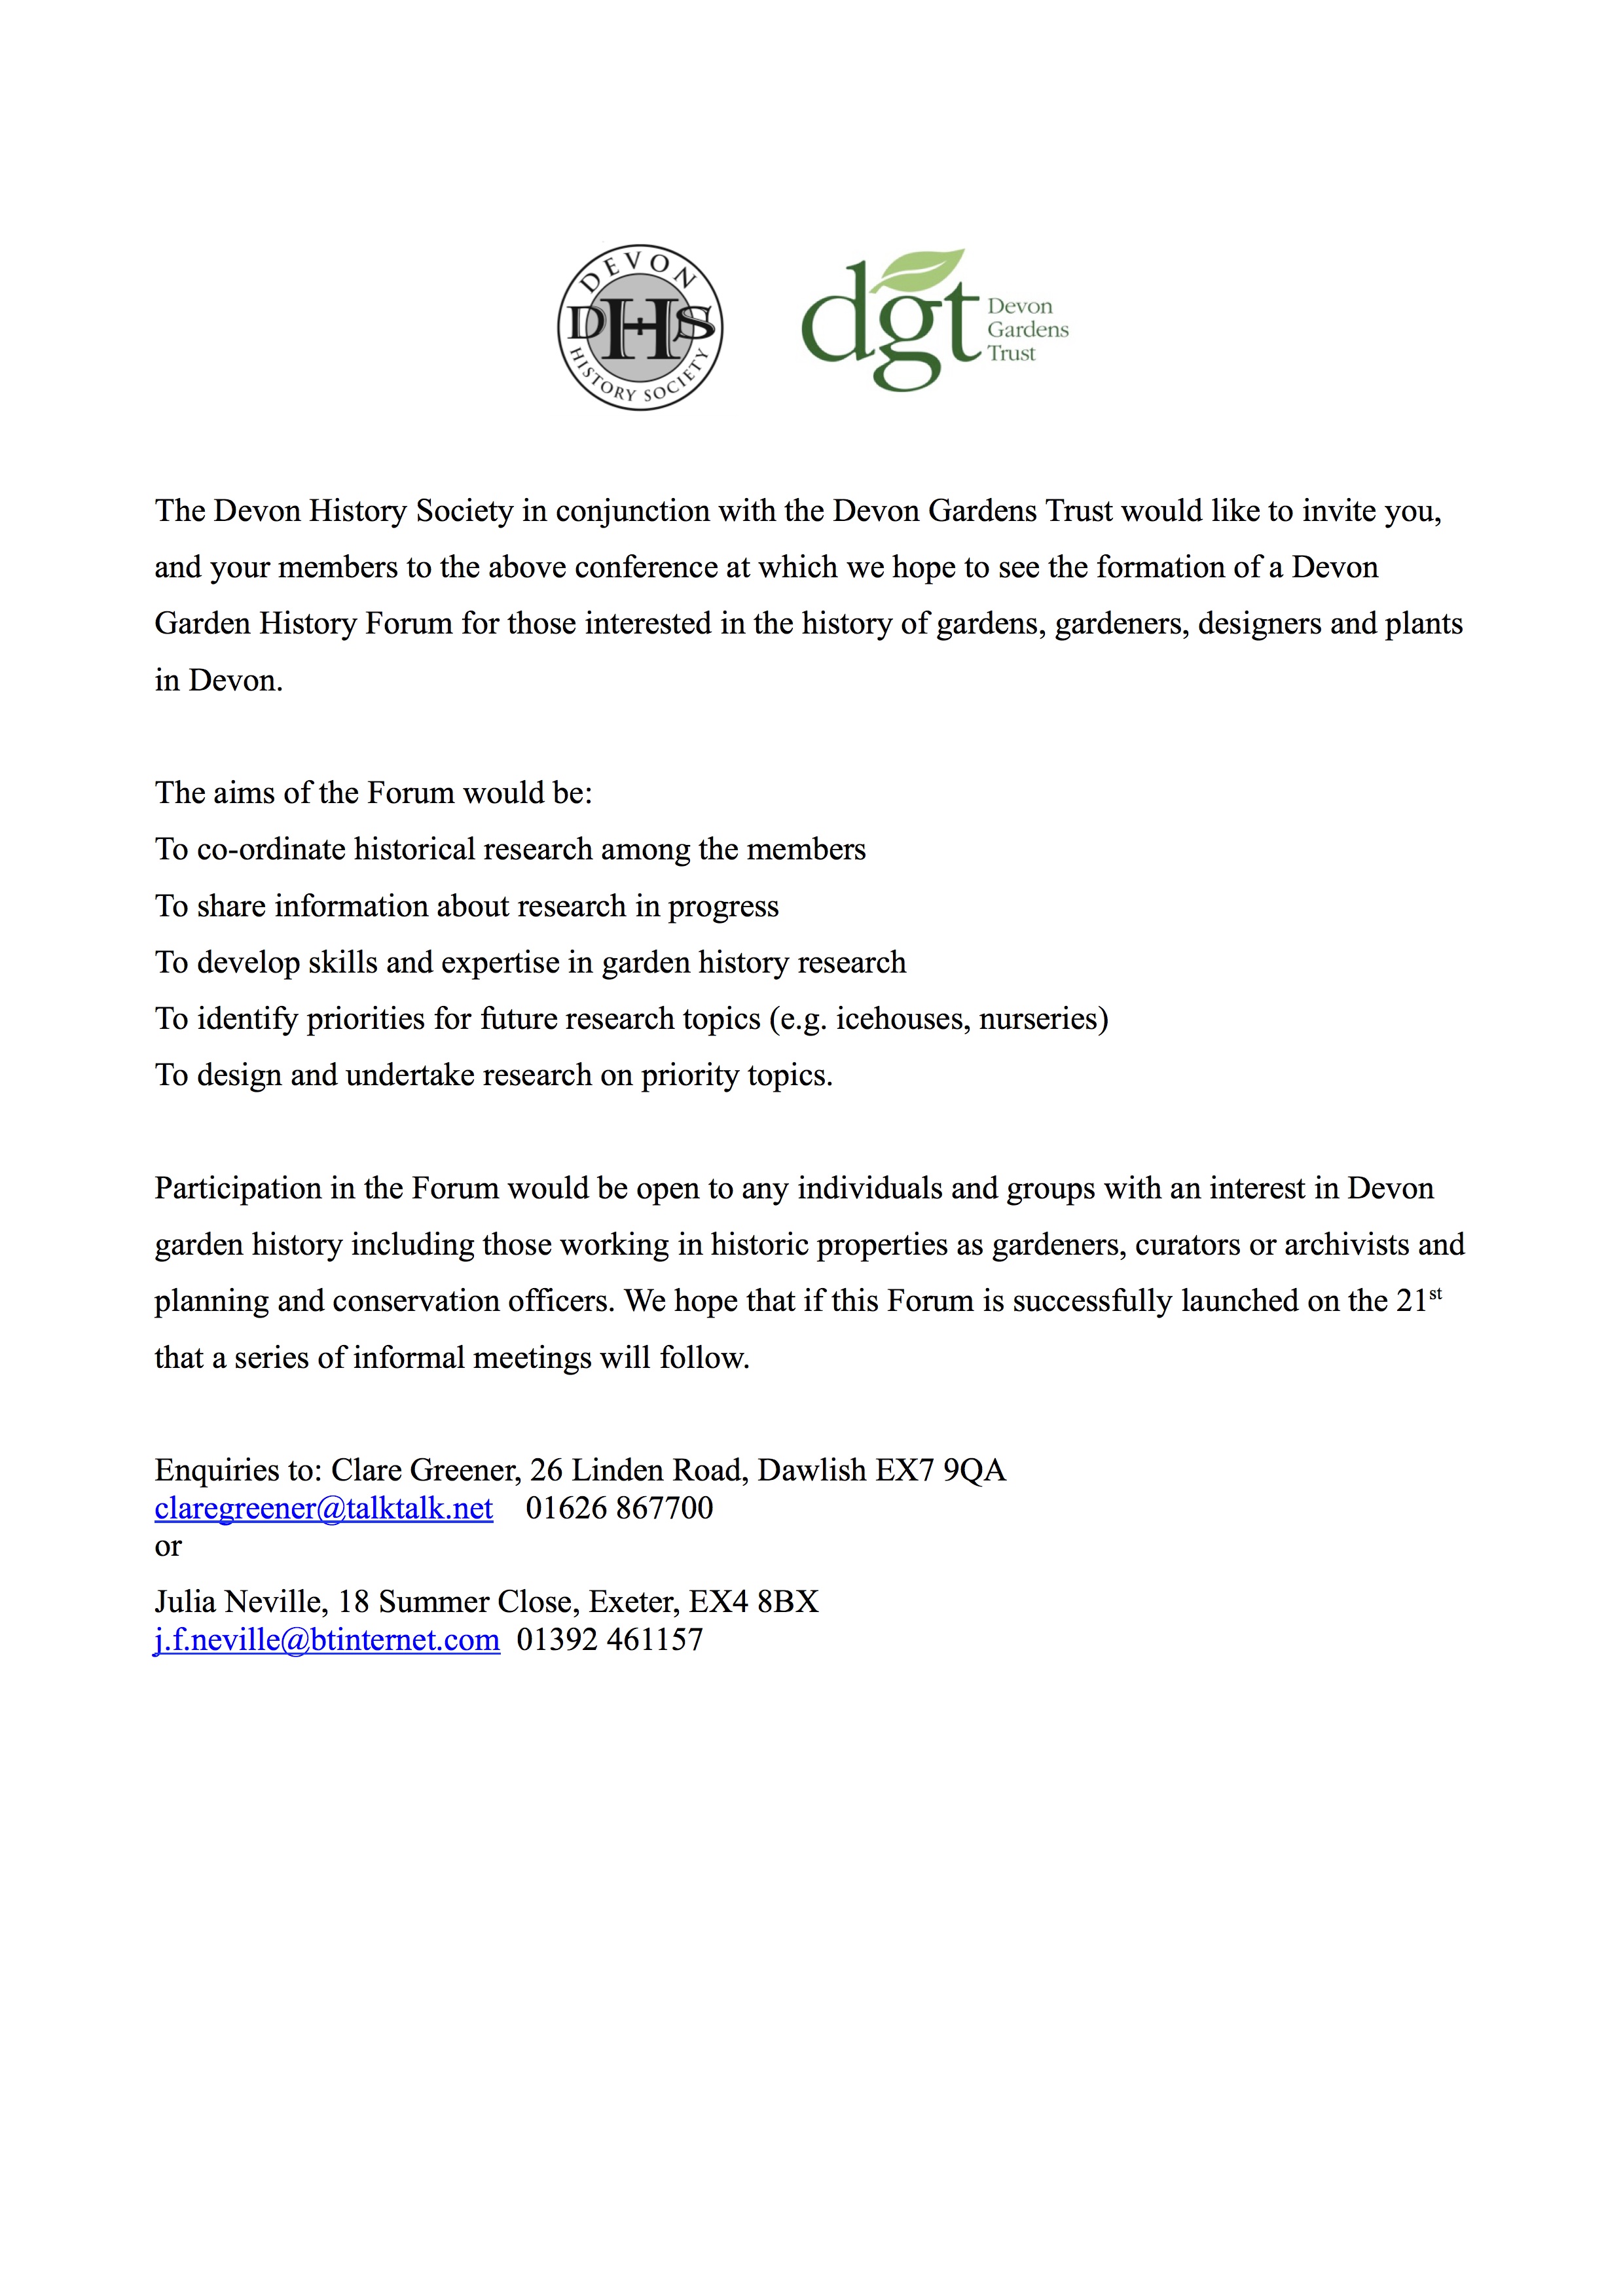 Devon Garden History Forum invite